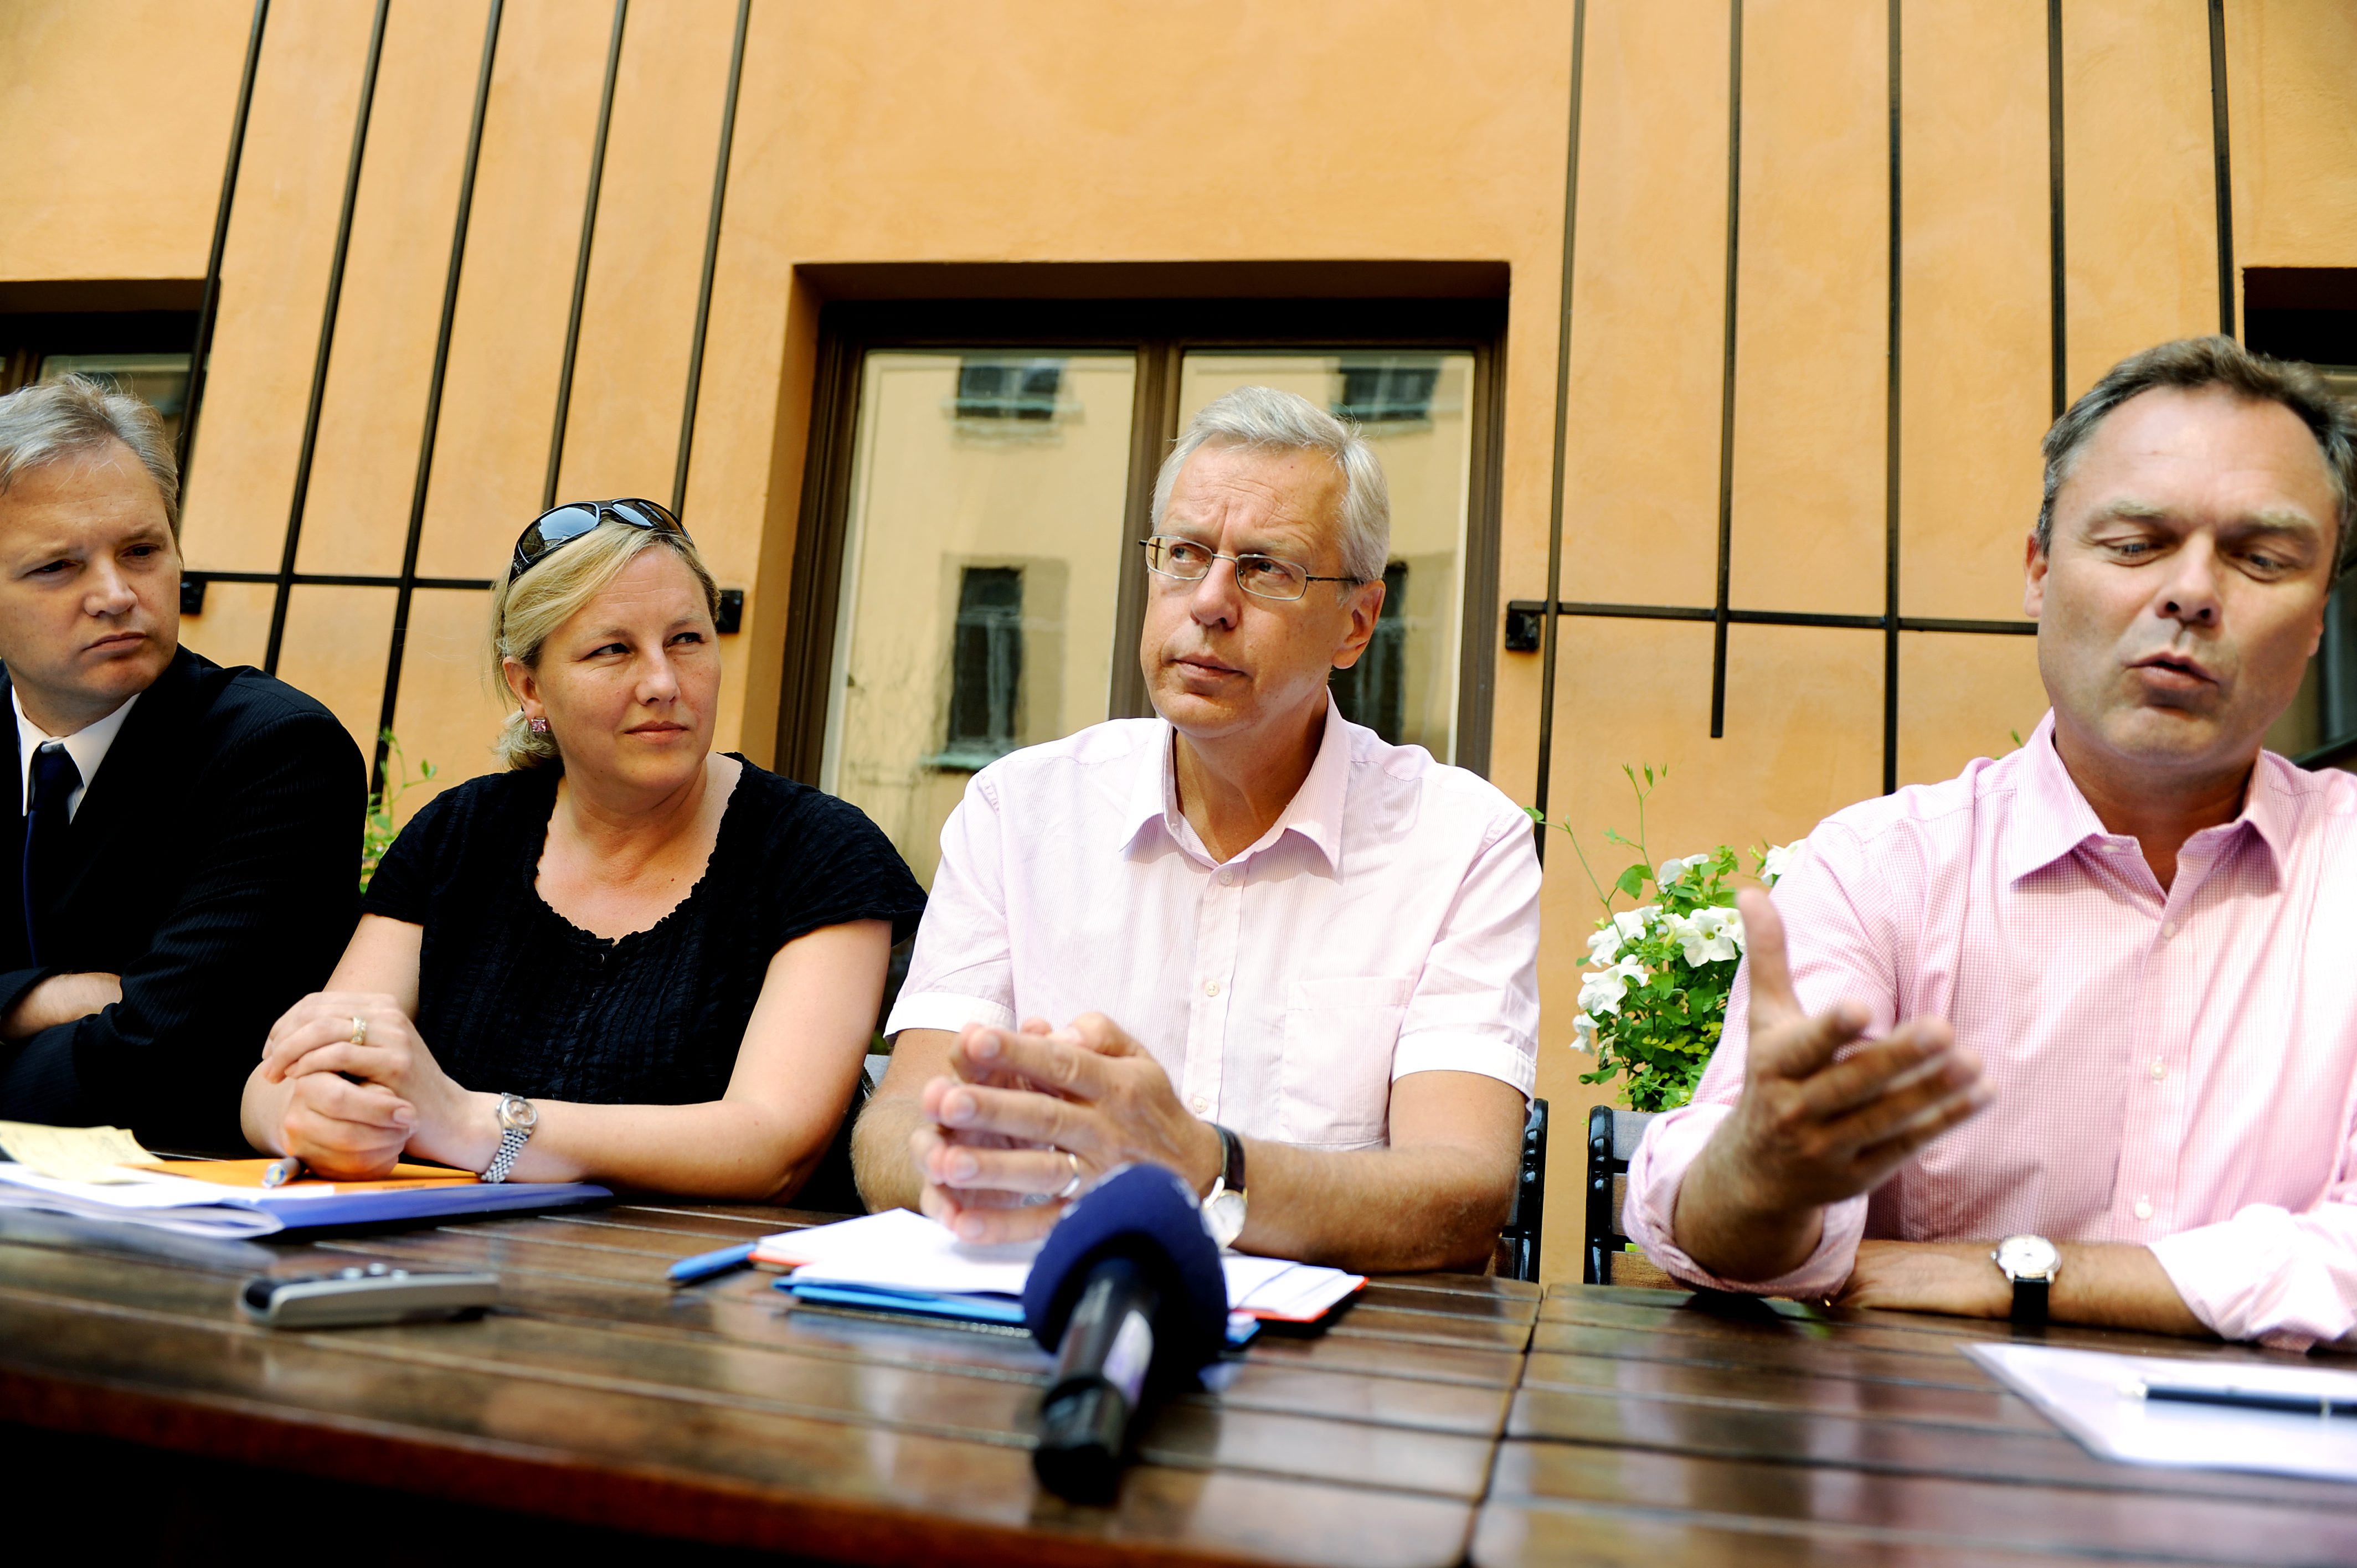 Liberalerna, Riksdagsvalet 2010, Jan Björklund, Moderaterna, Sten Tolgfors